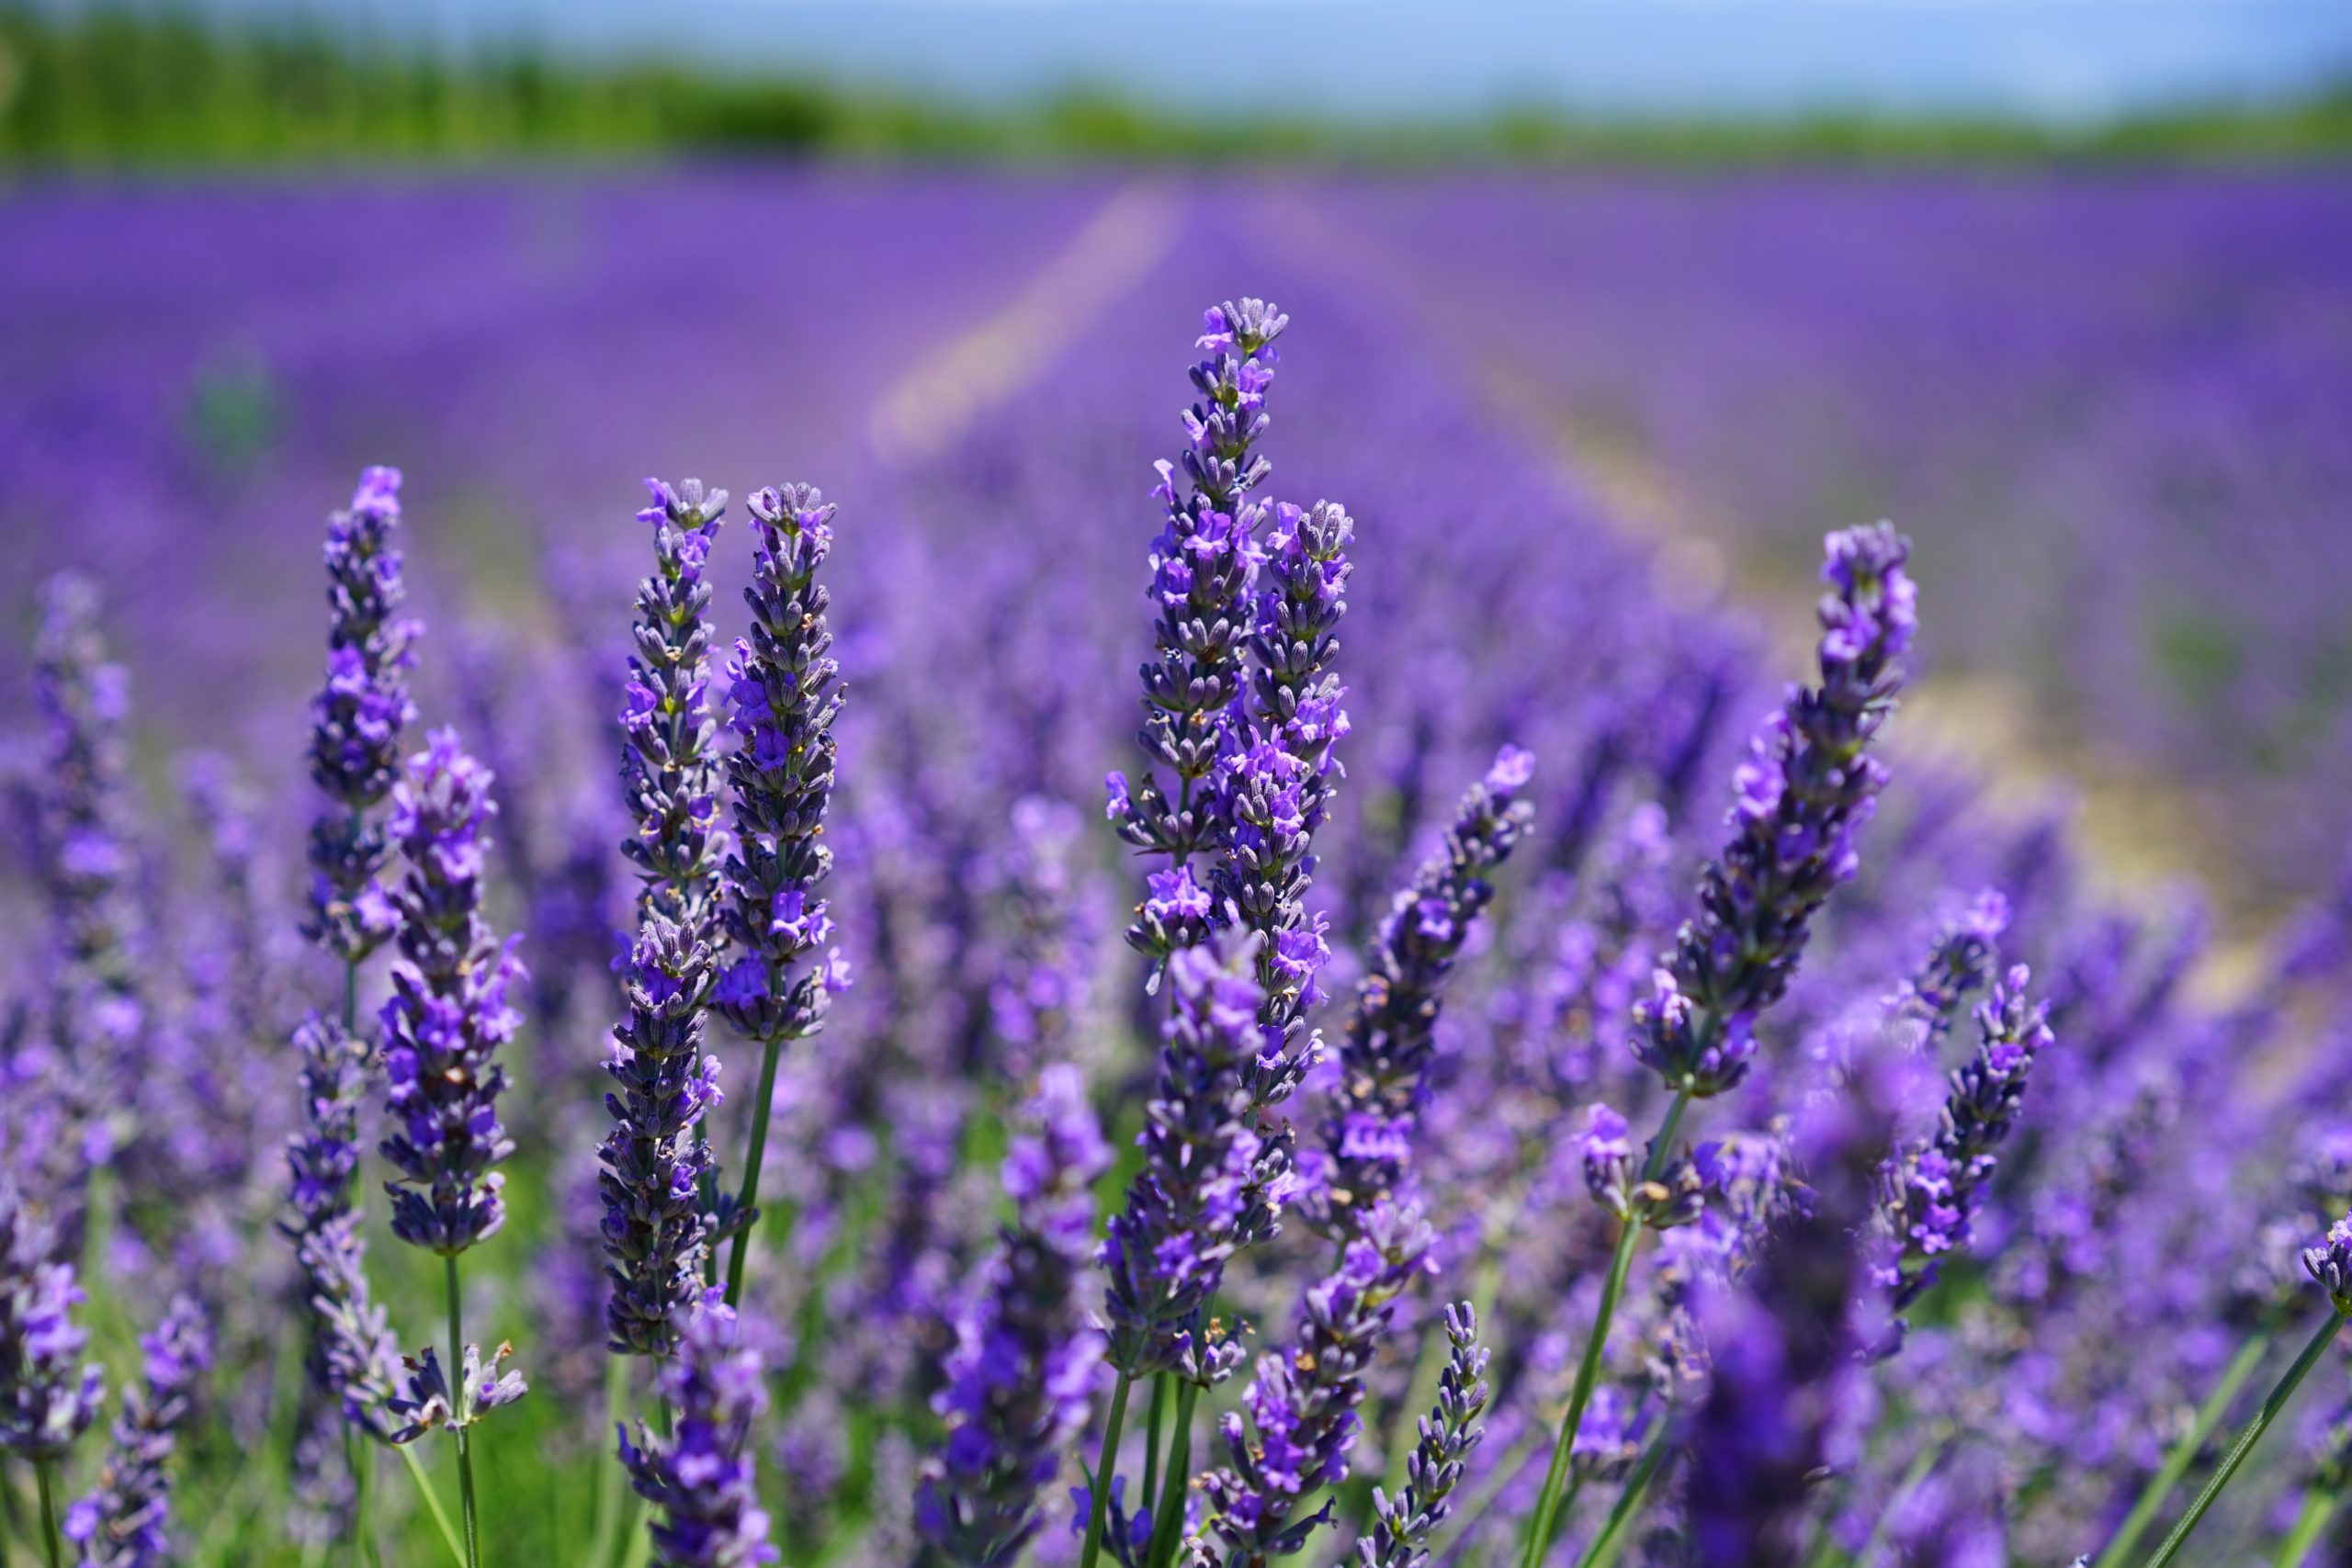 A lavender garden; lavender has a distinctive terpene 